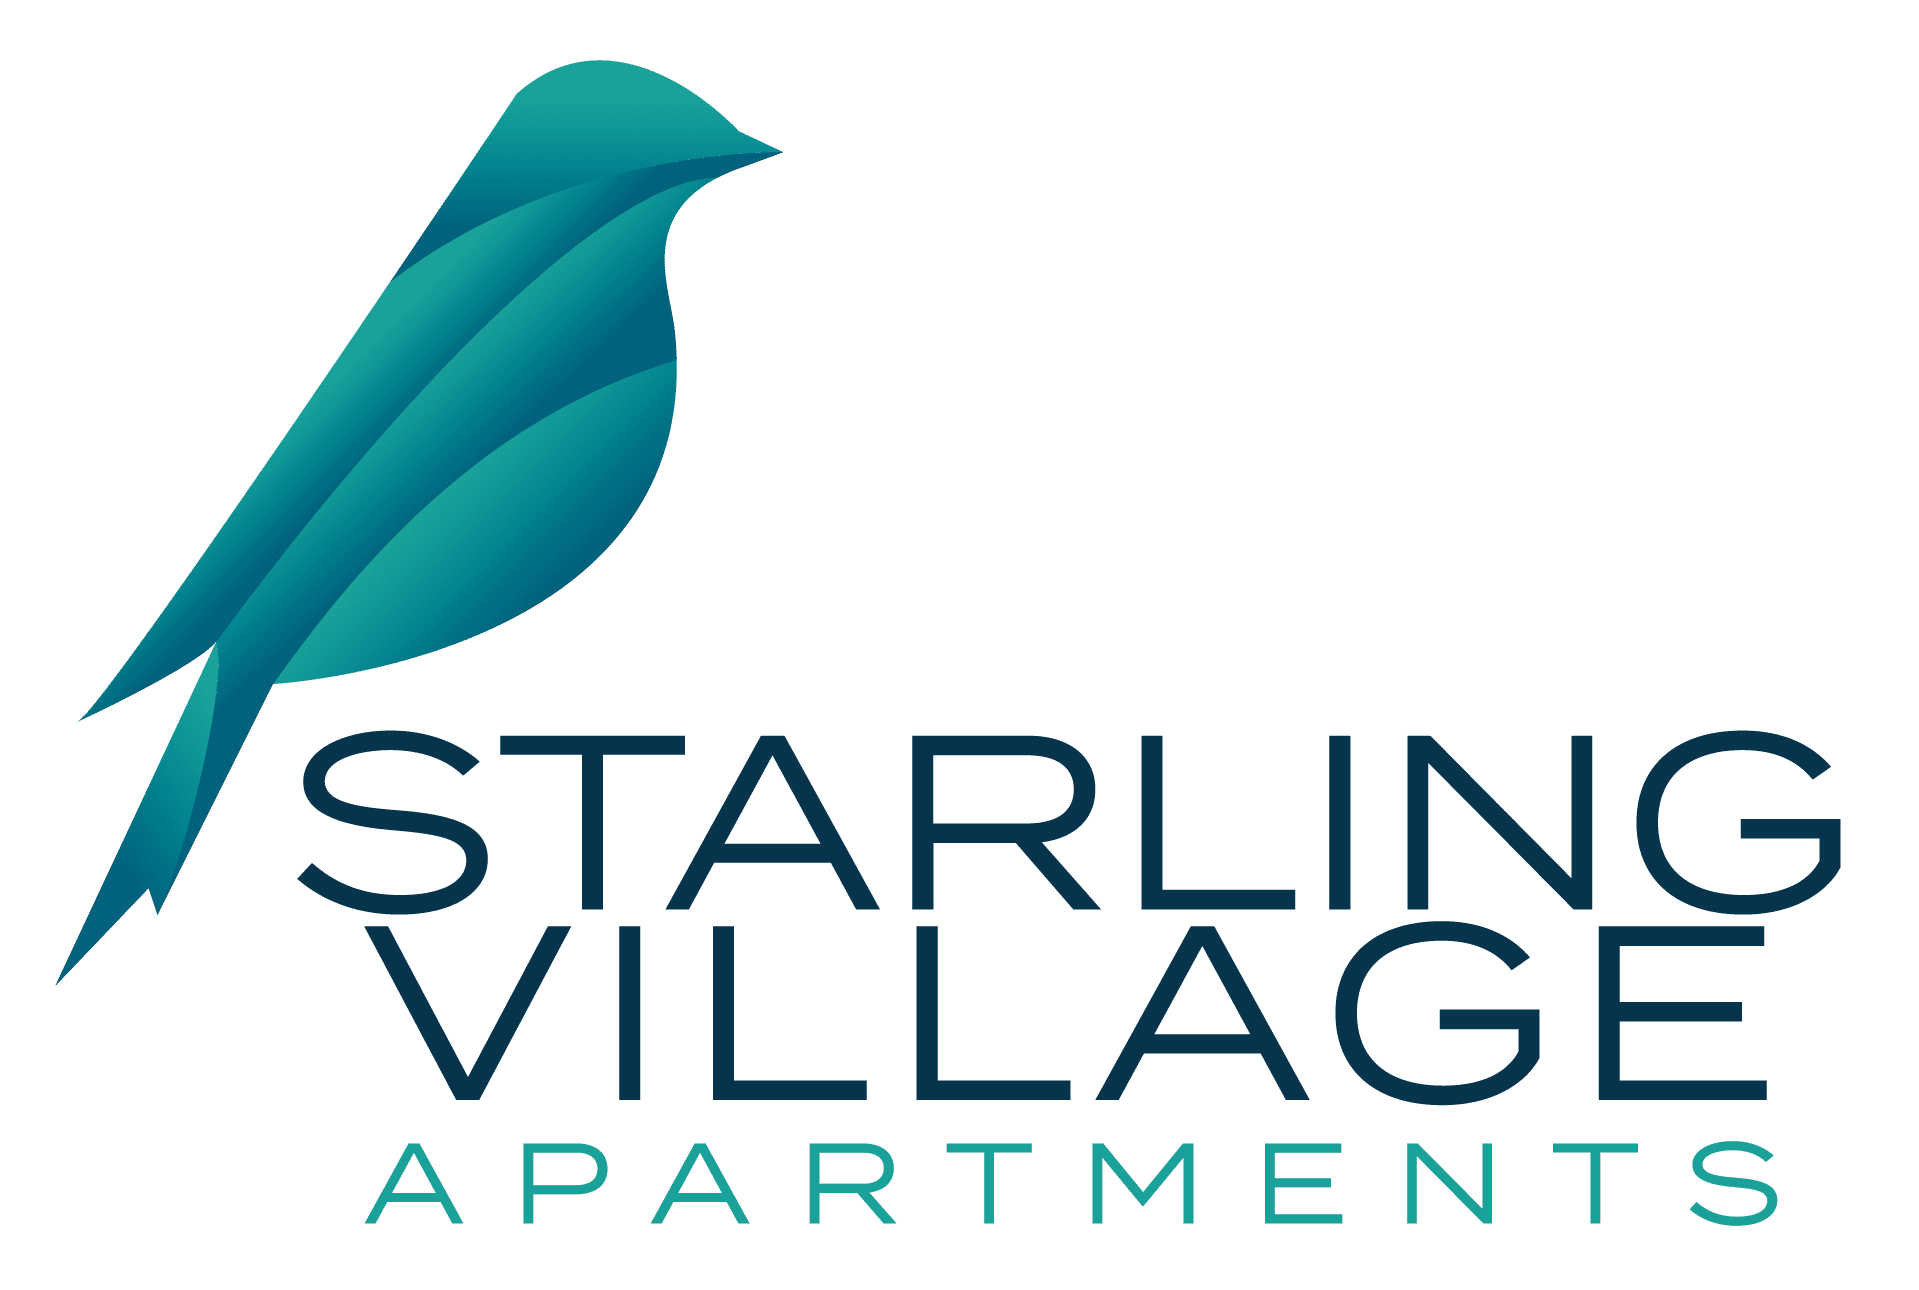 Starling Village